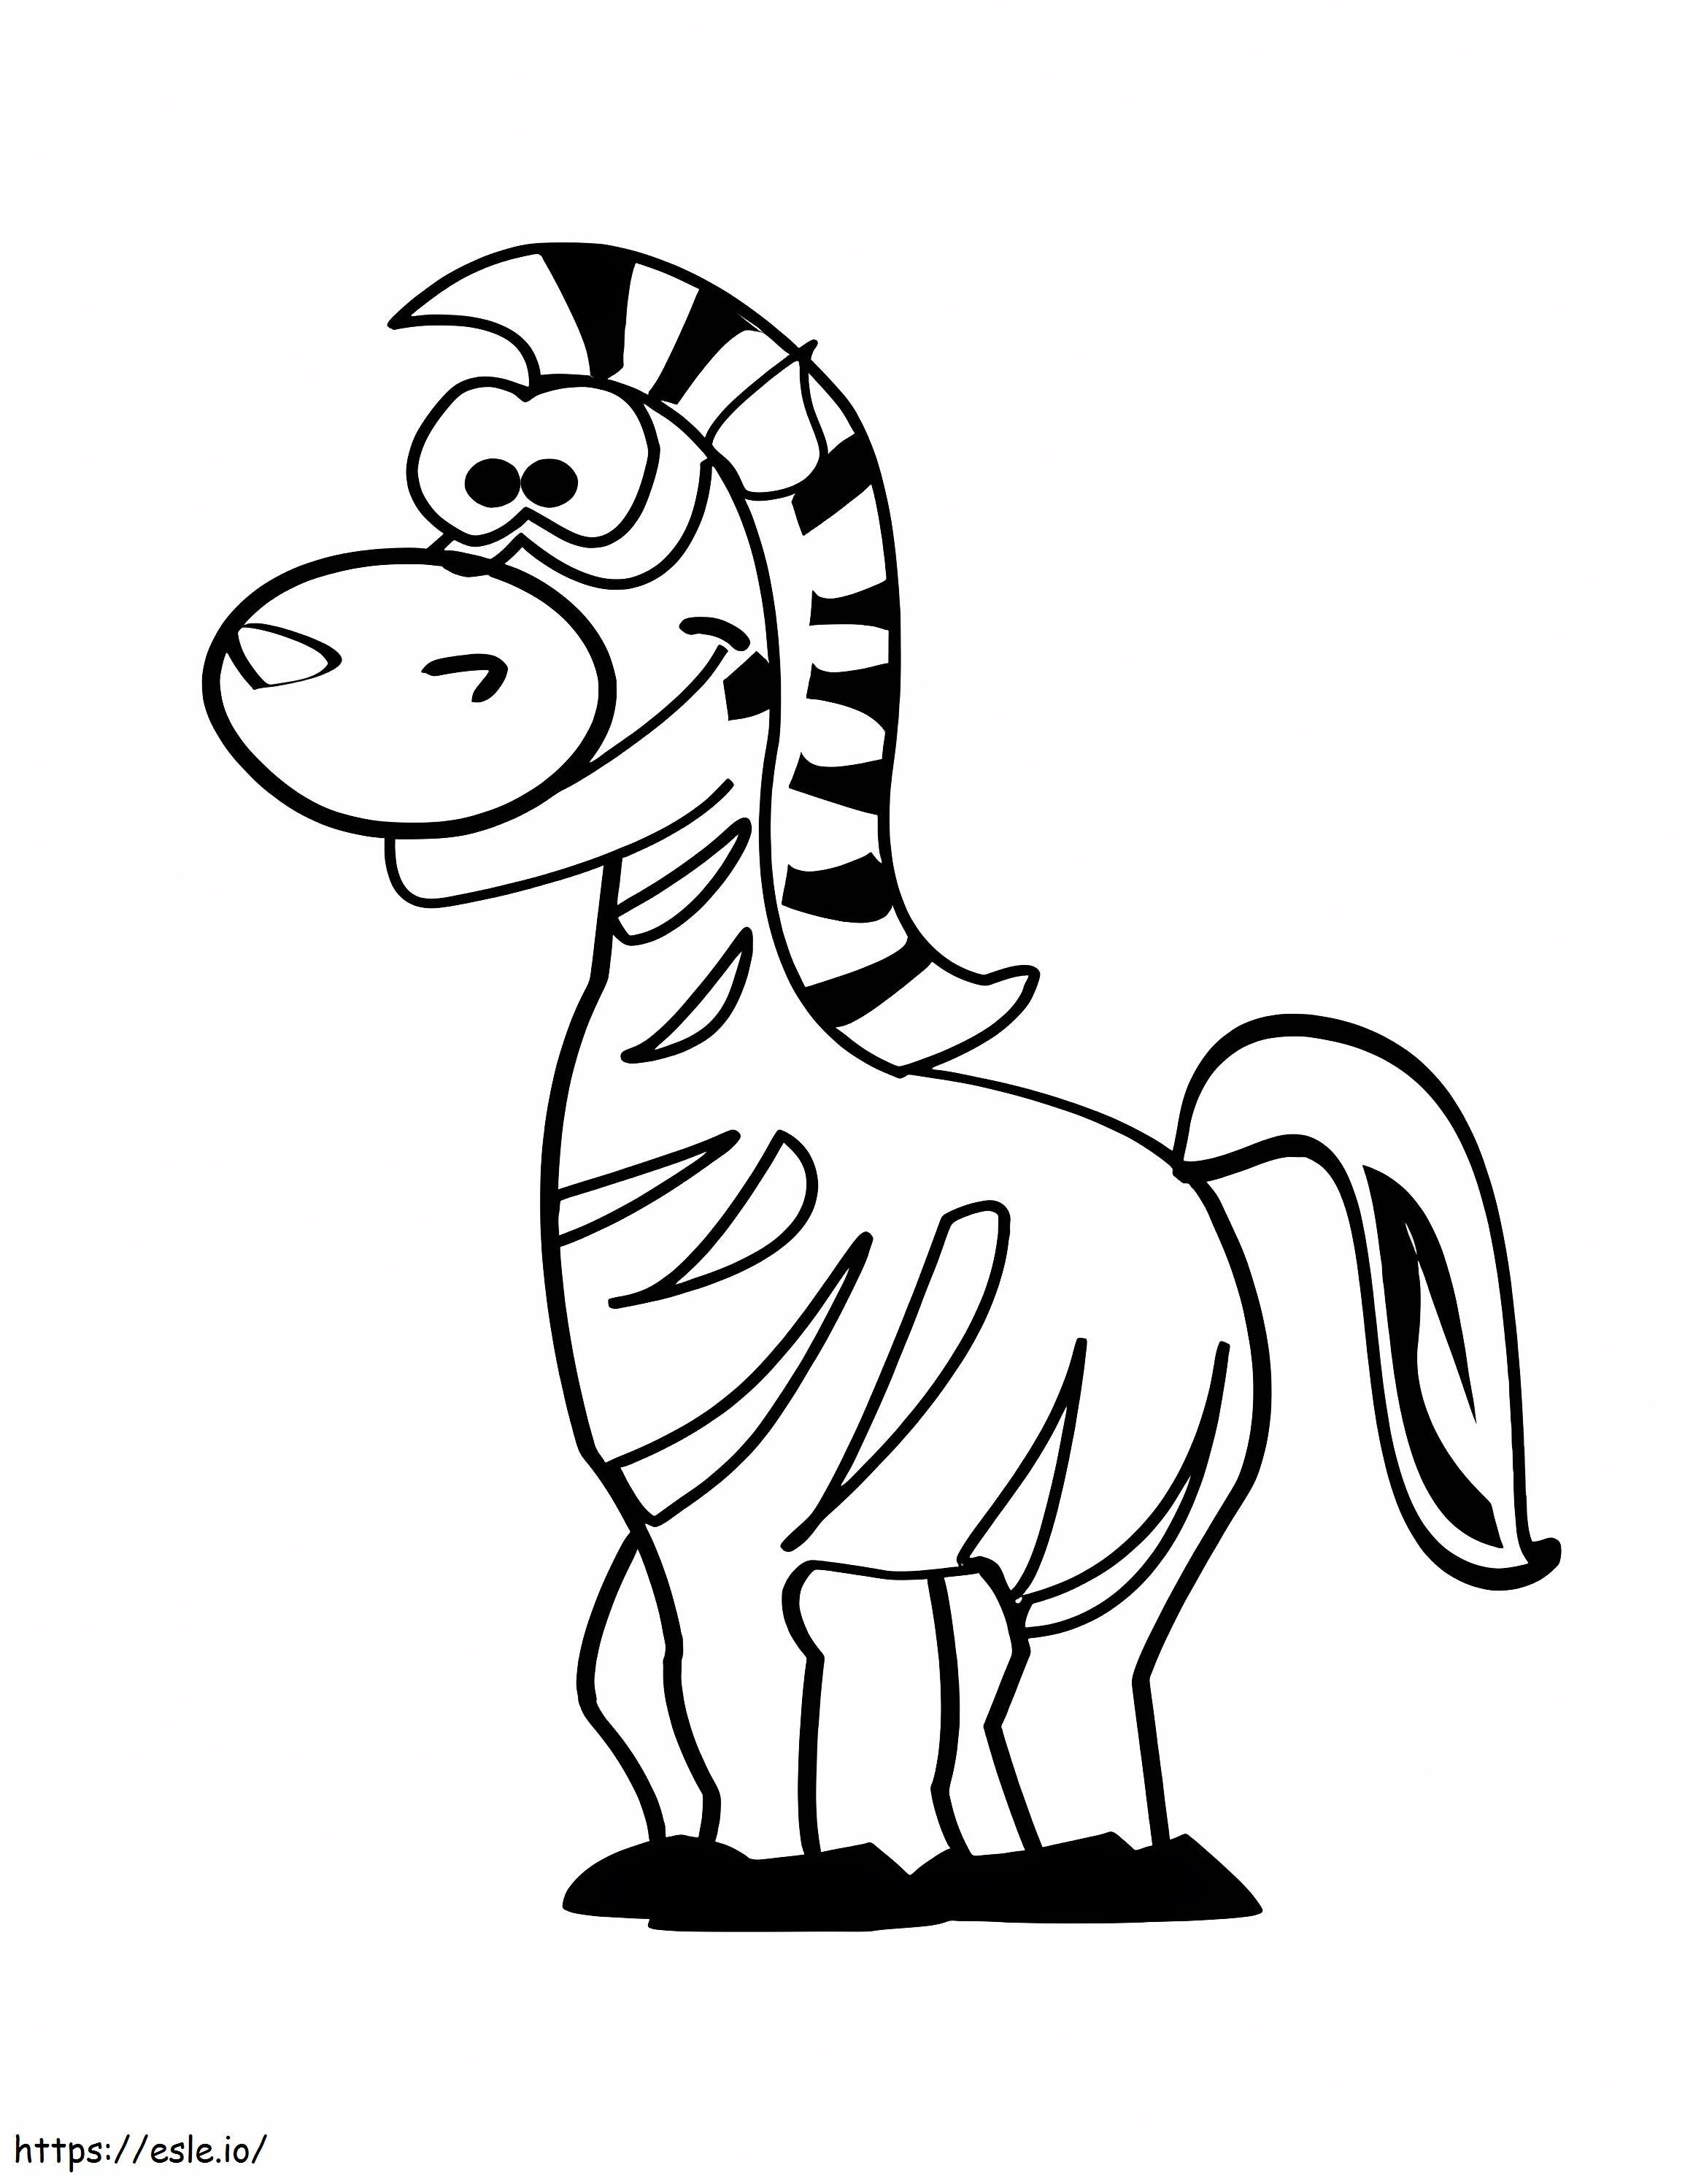 zebra engraçada para colorir